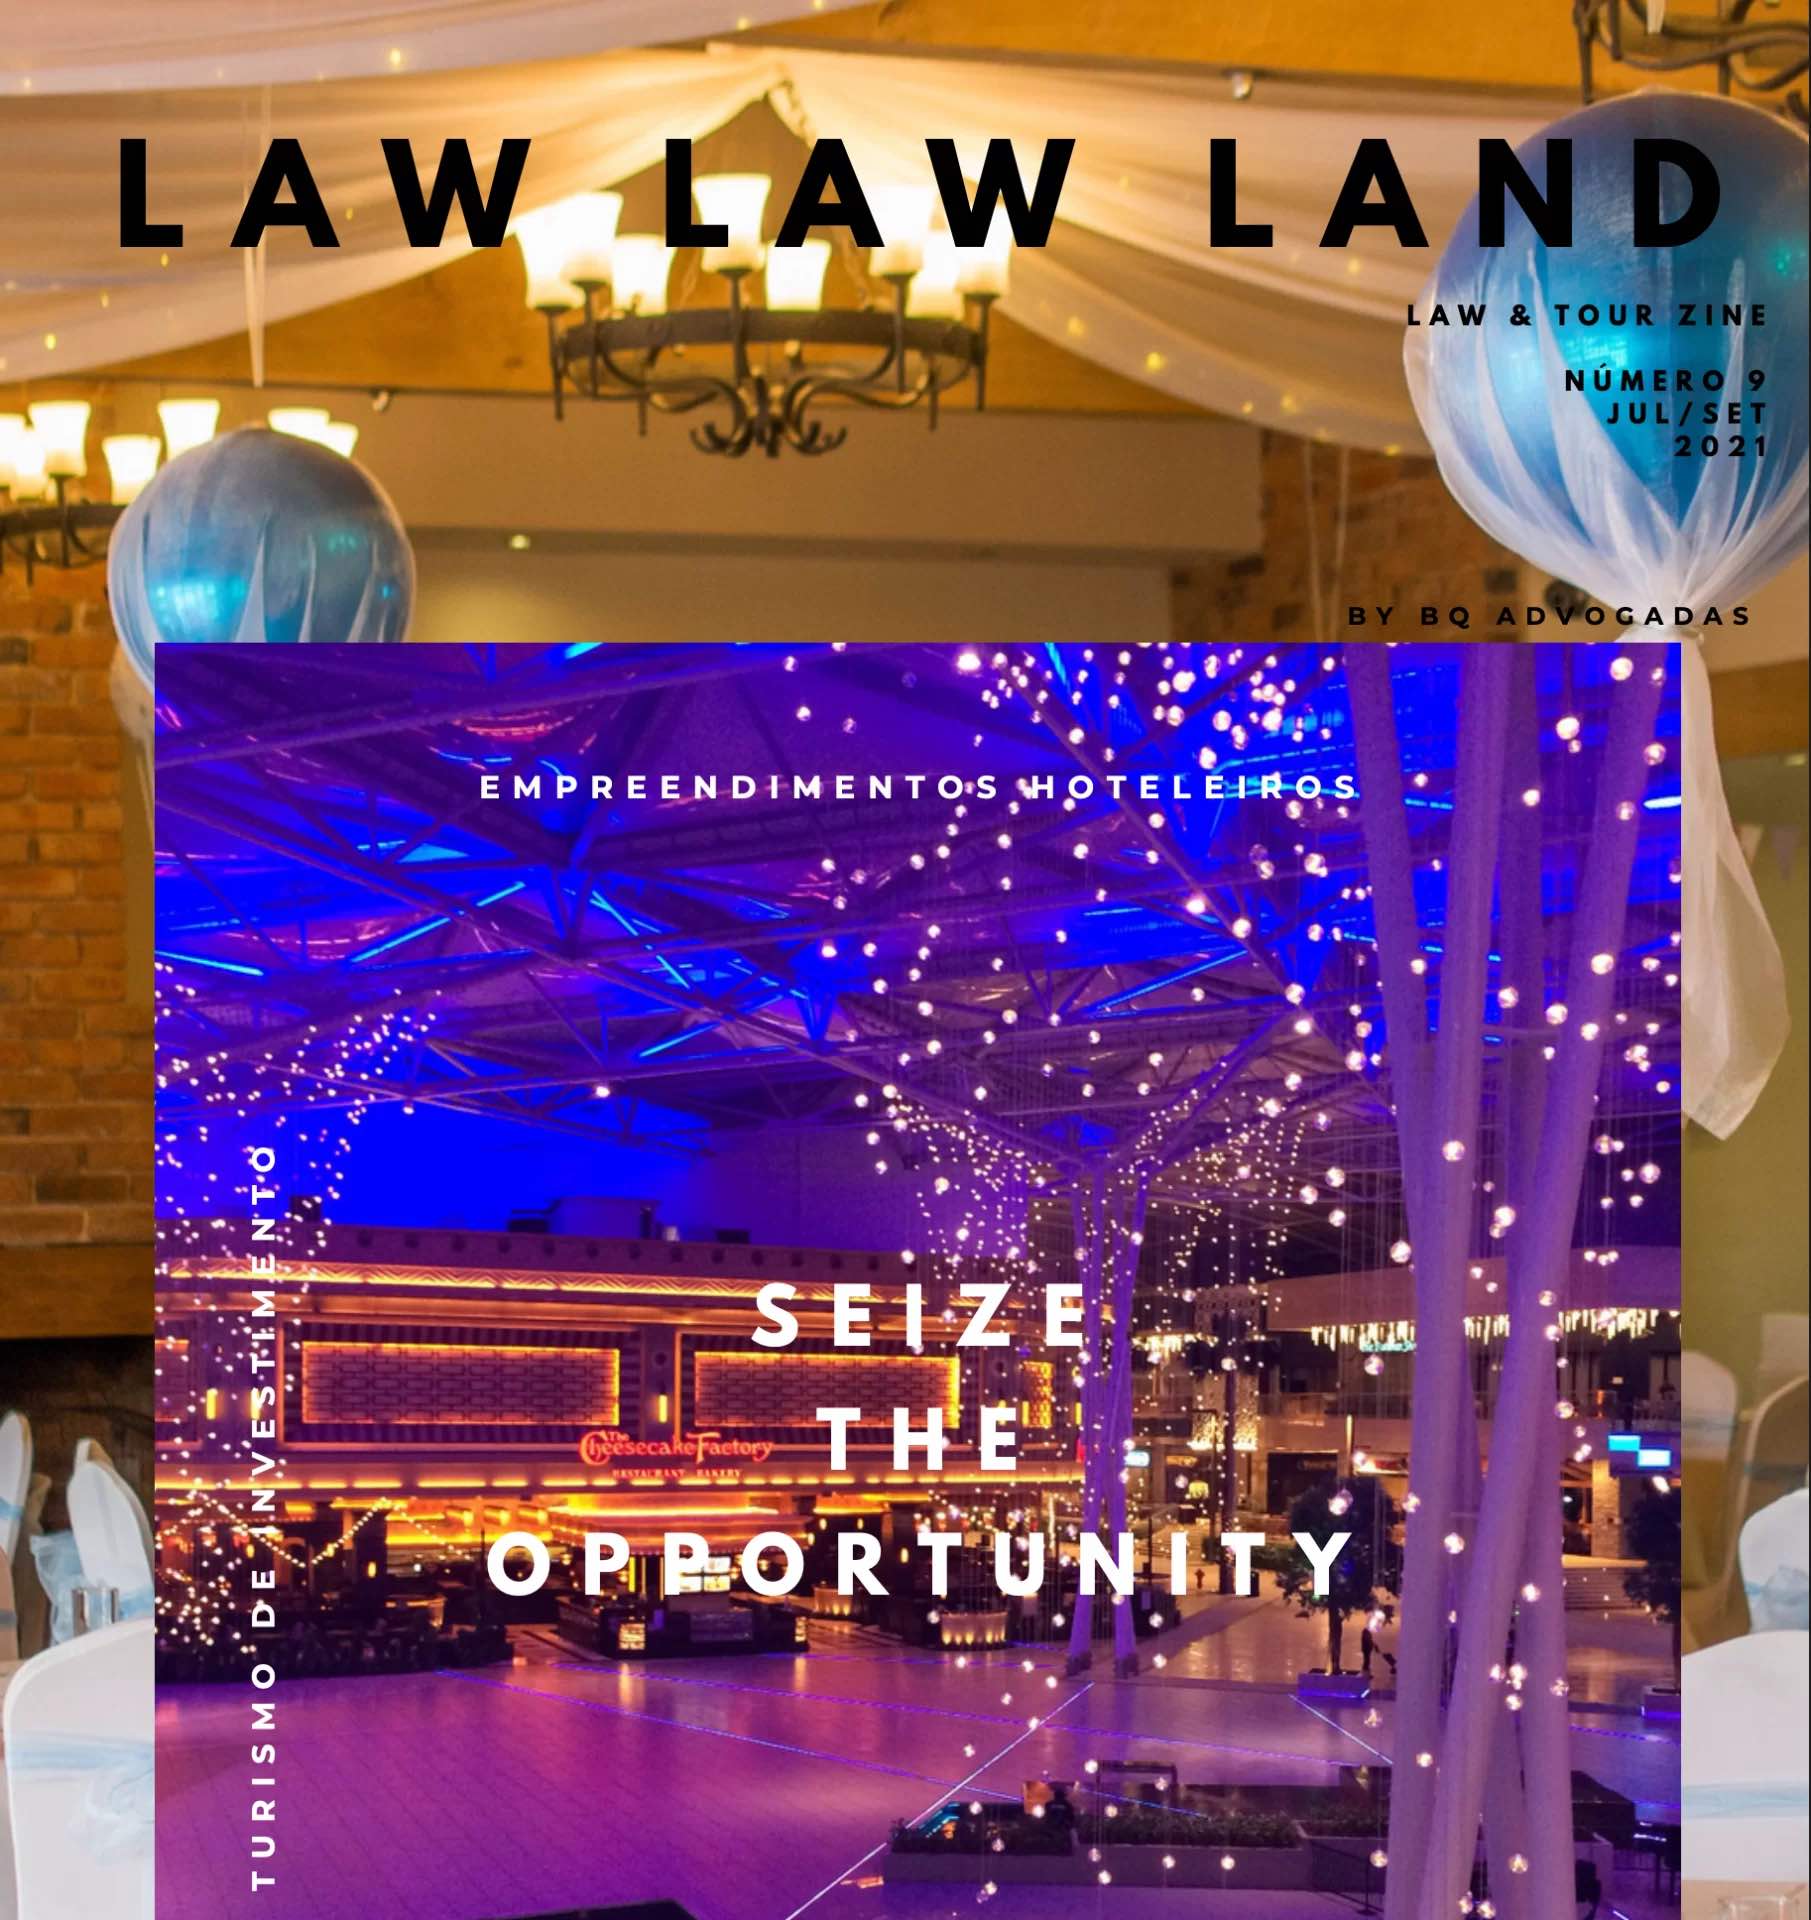 bq advogadas law law land edicao 09